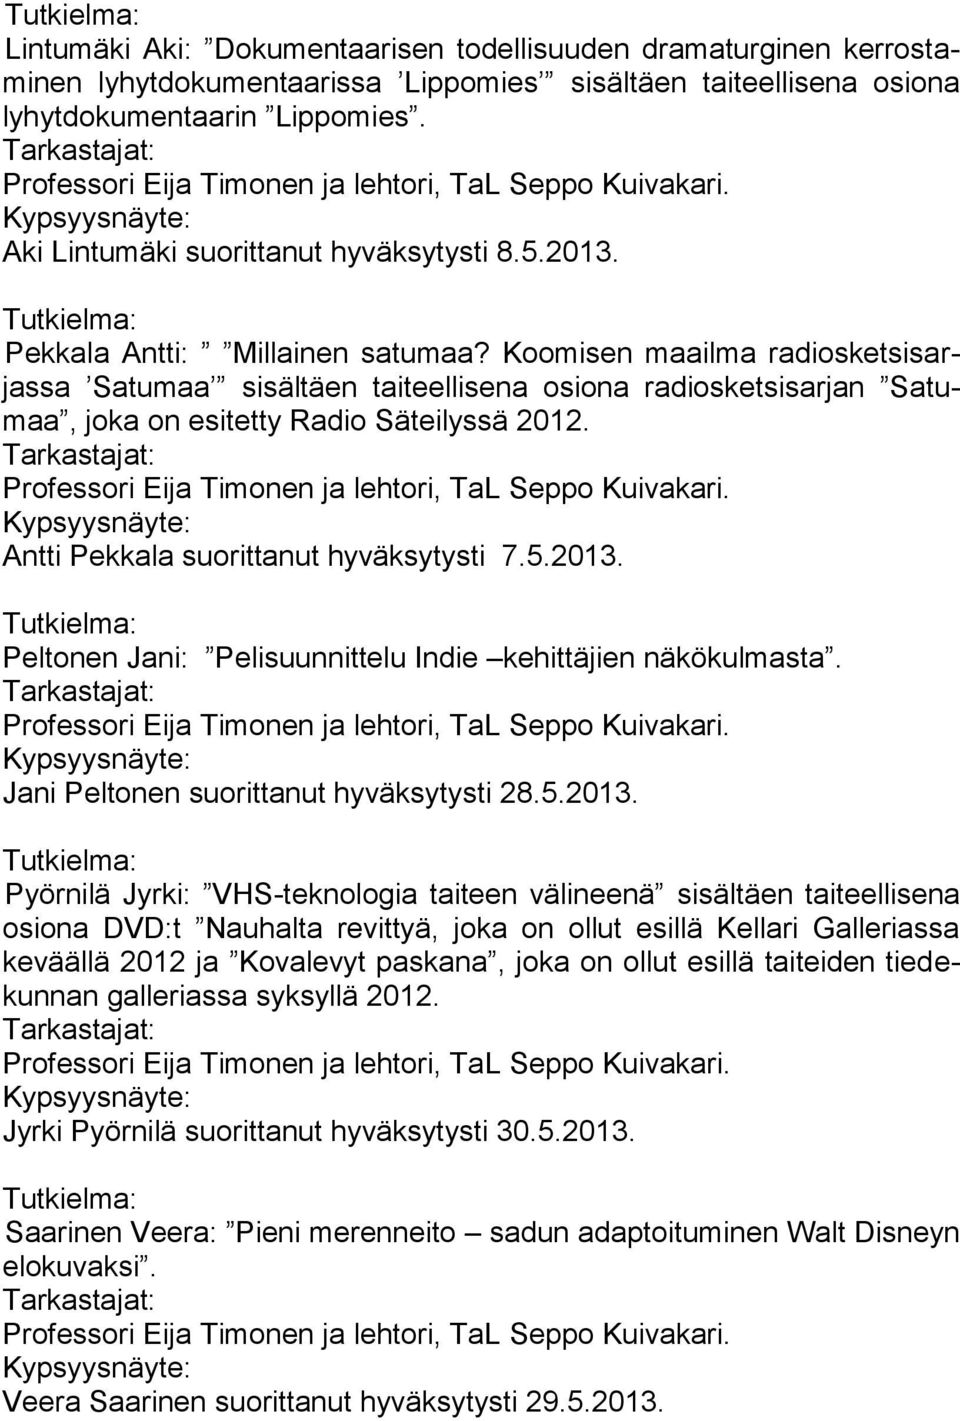 Koomisen maailma radiosketsisarjassa Satumaa sisältäen taiteellisena osiona radiosketsisarjan Satumaa, joka on esitetty Radio Säteilyssä 2012. Professori Eija Timonen ja lehtori, TaL Seppo Kuivakari.